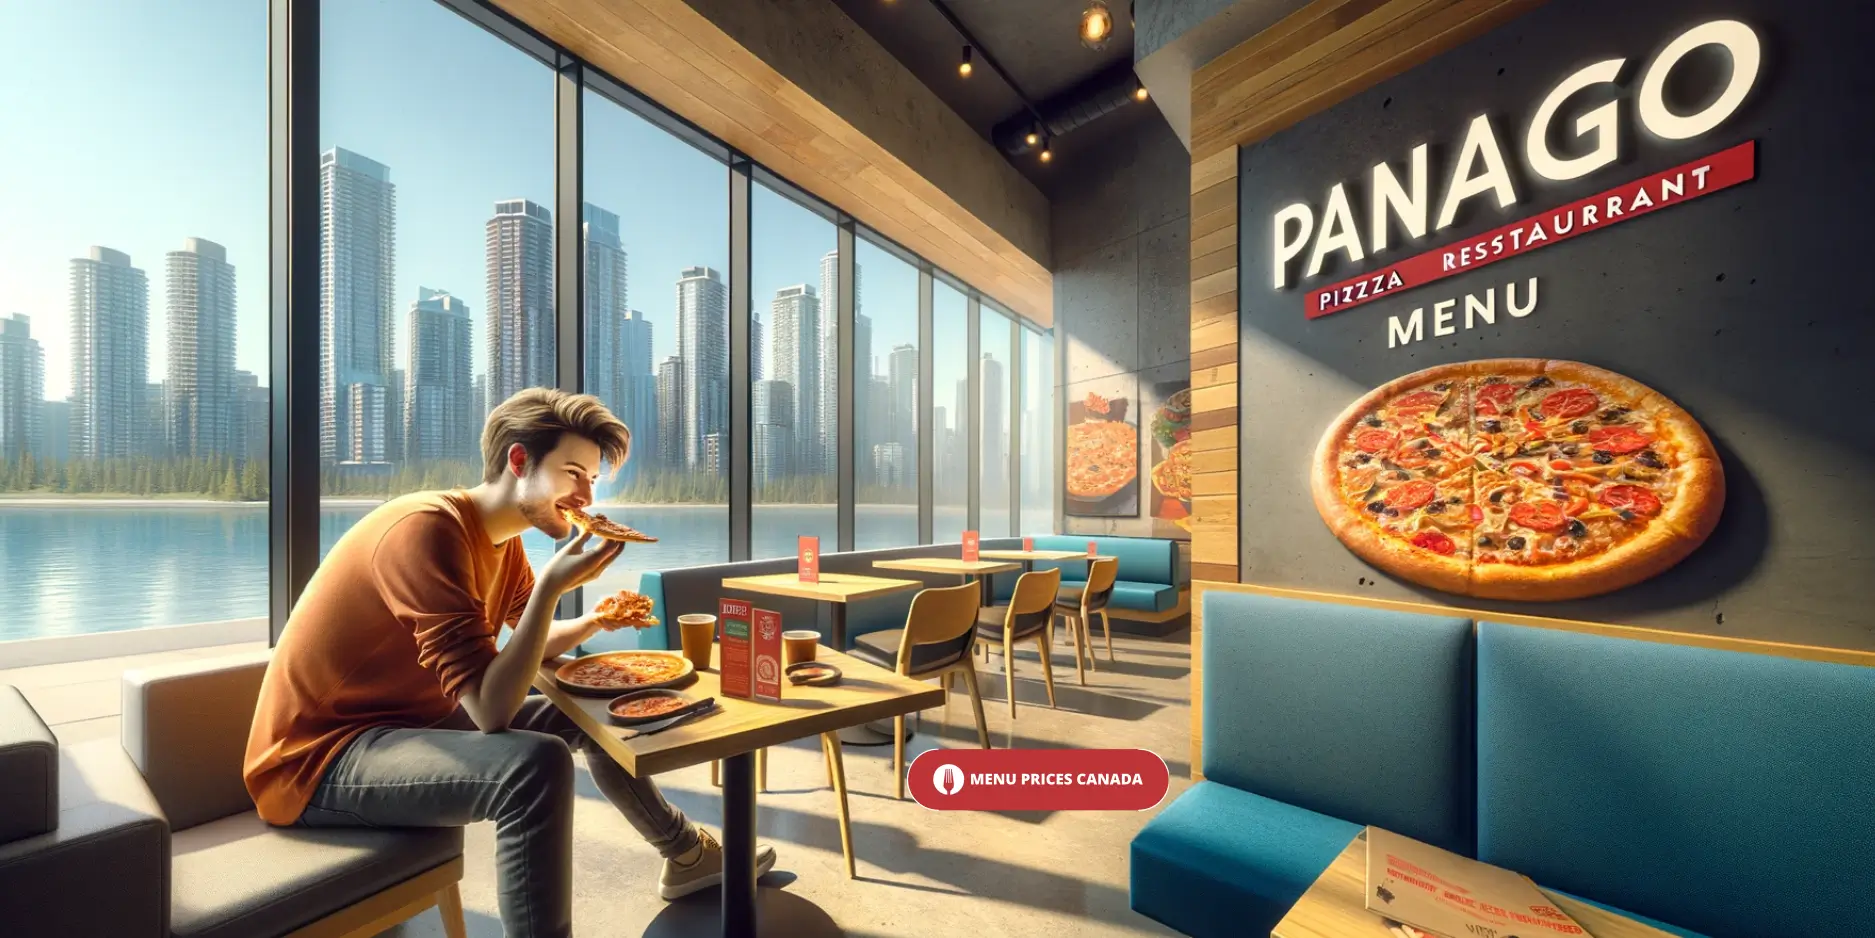 Panago-Pizza-Restaurant-Menu-Prices-Canada